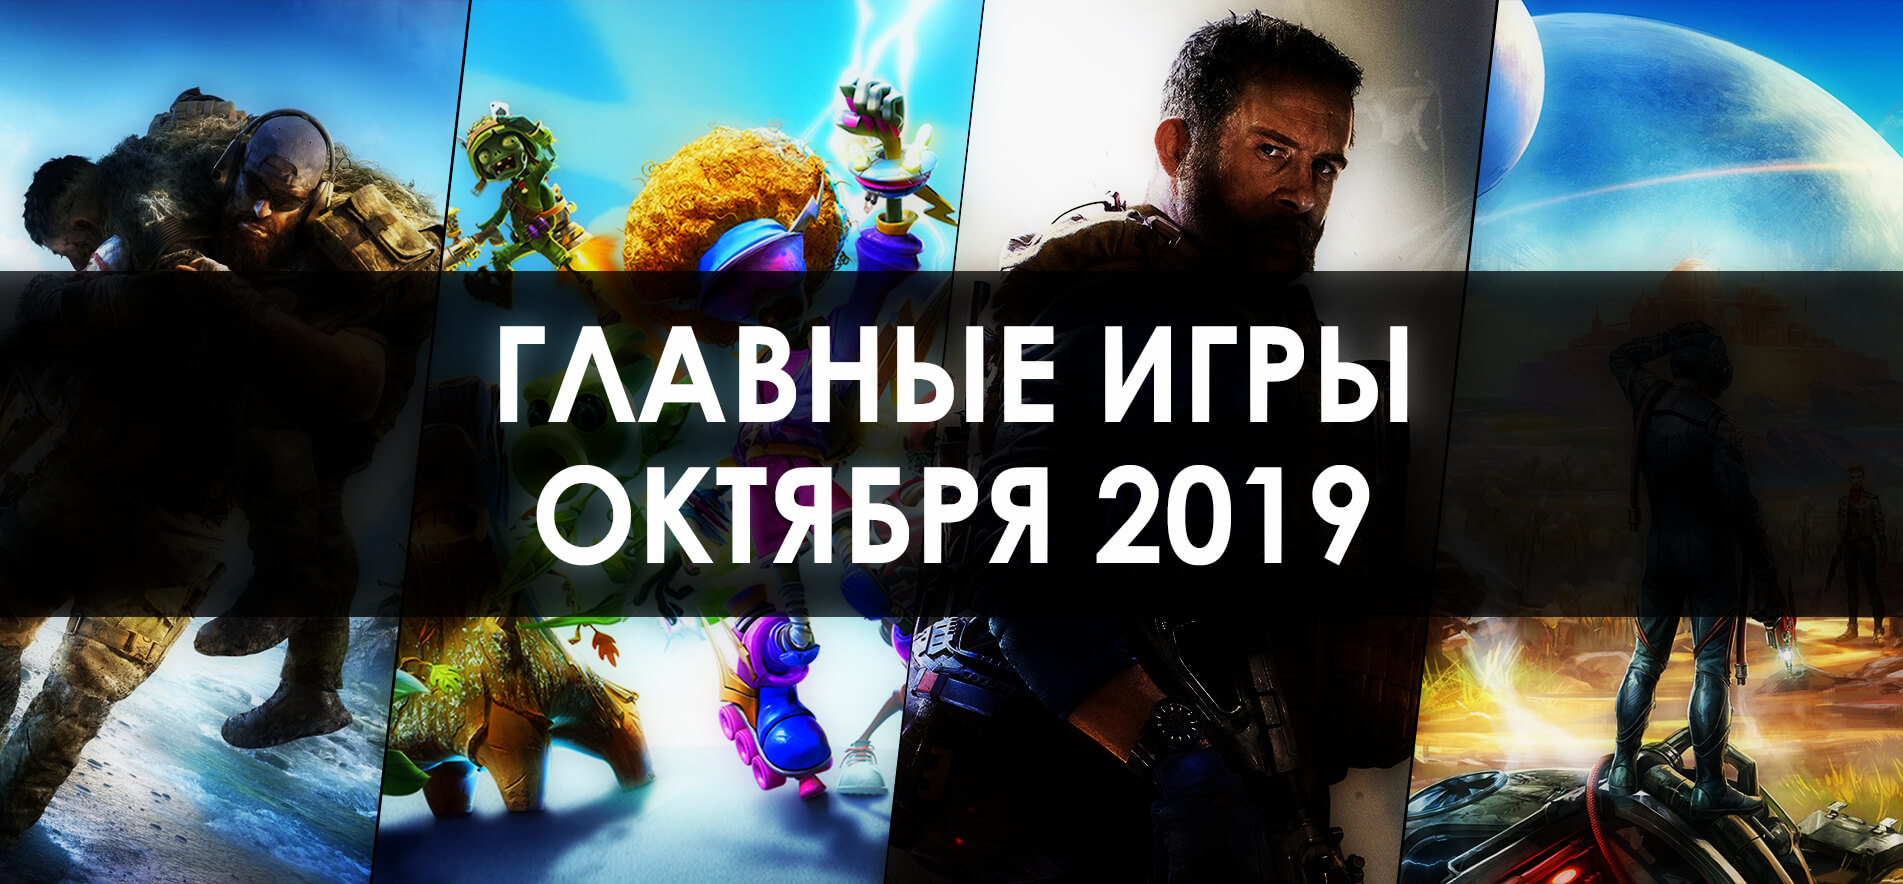 Главные игры Октября 2019 года (фото)